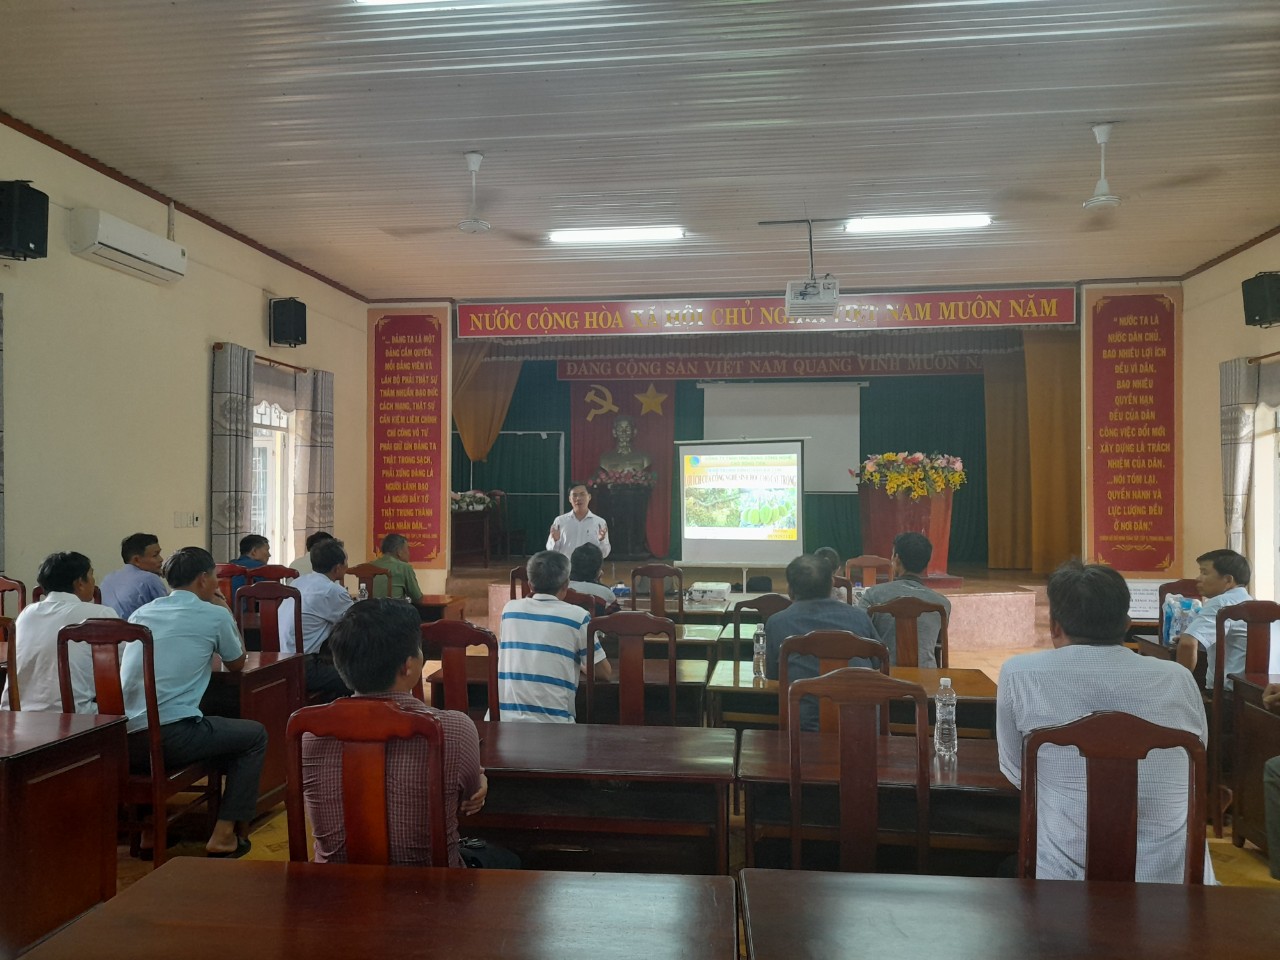 Hội Nông dân xã Phú Riềng tổ chức Hội nghị tập huấn chuyển giao khoa học kỹ thuật và cách chăm sóc cây sầu riêng theo hướng nông nghiệp hữu cơ bền vững